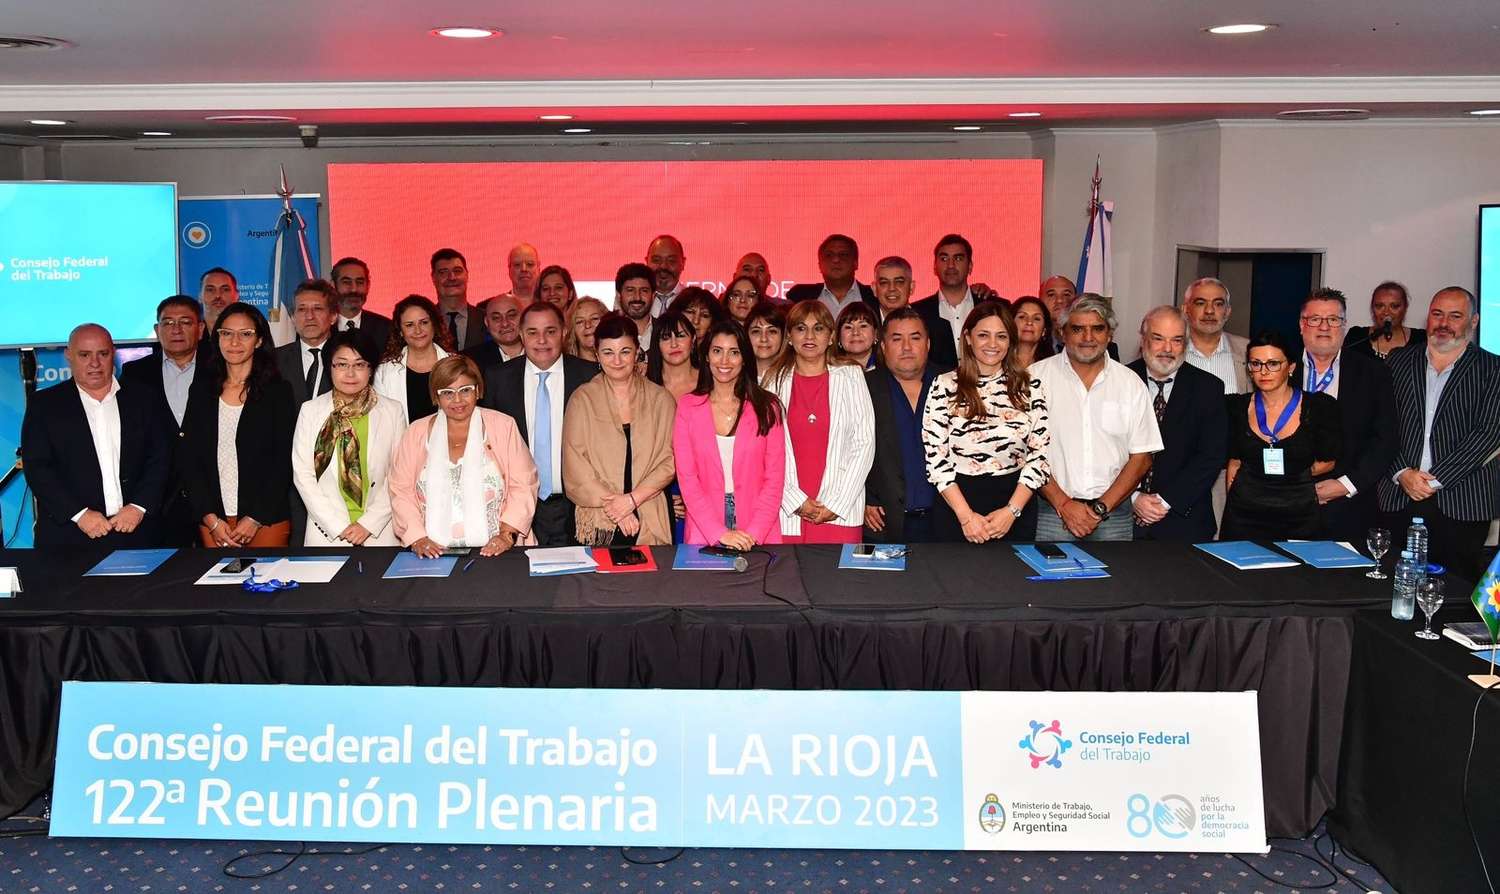 La provincia de Buenos Aires participó del Consejo Federal del Trabajo